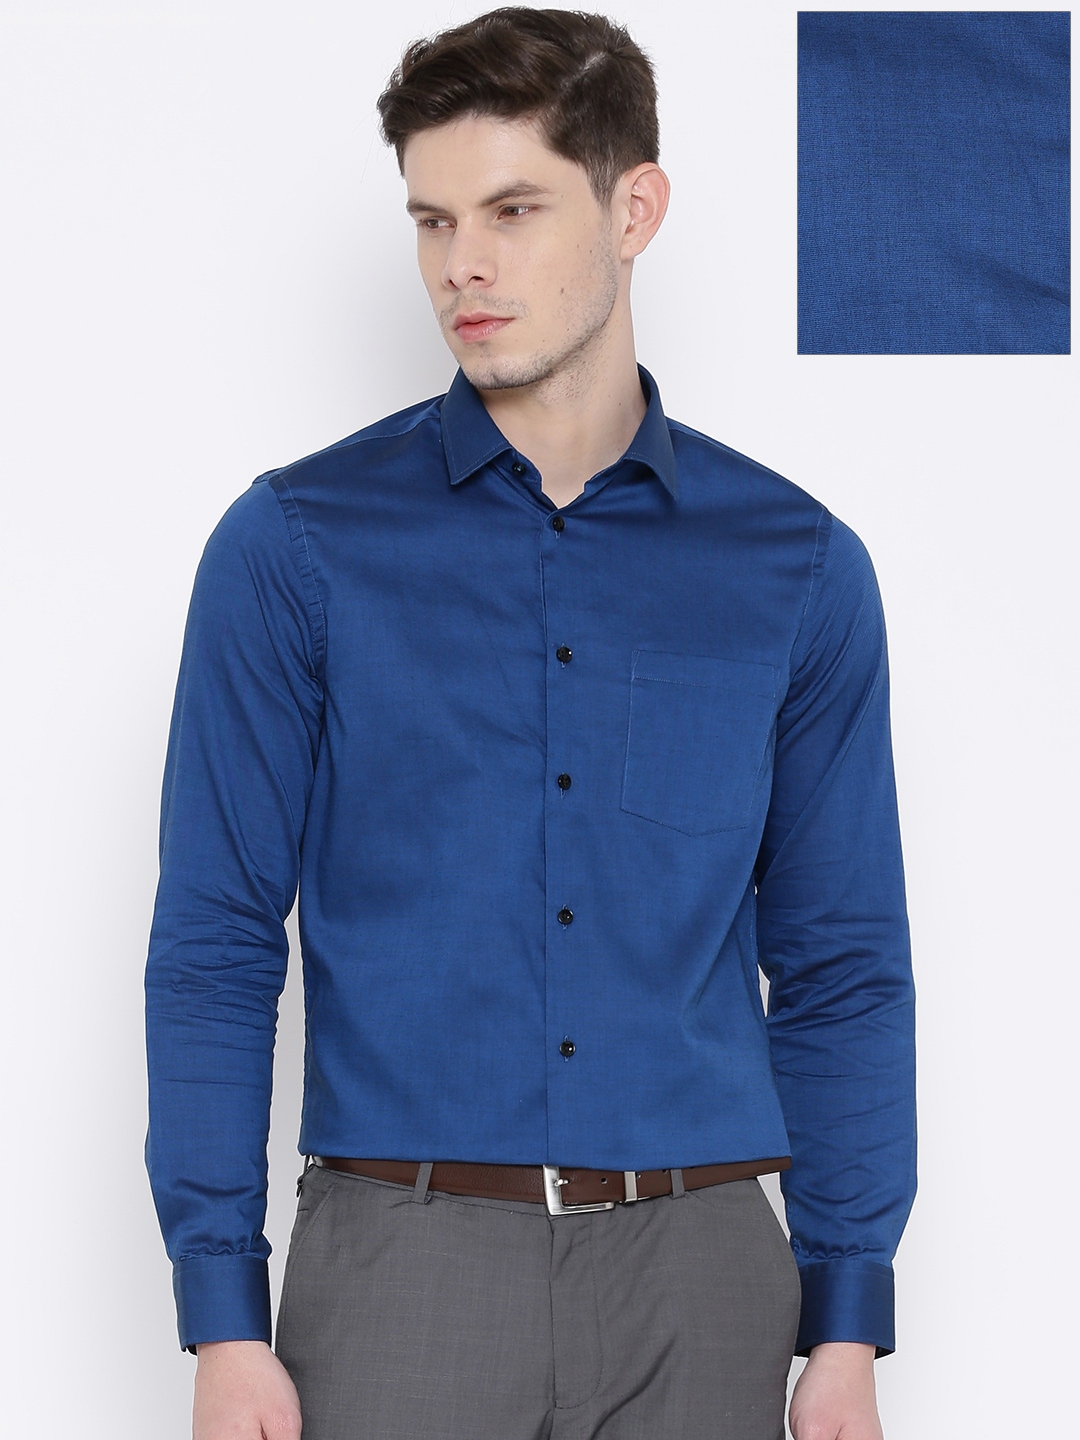 Buy Blackberrys Blue Slim Fit Formal Shirt - Shirts for Men 1388680 ...